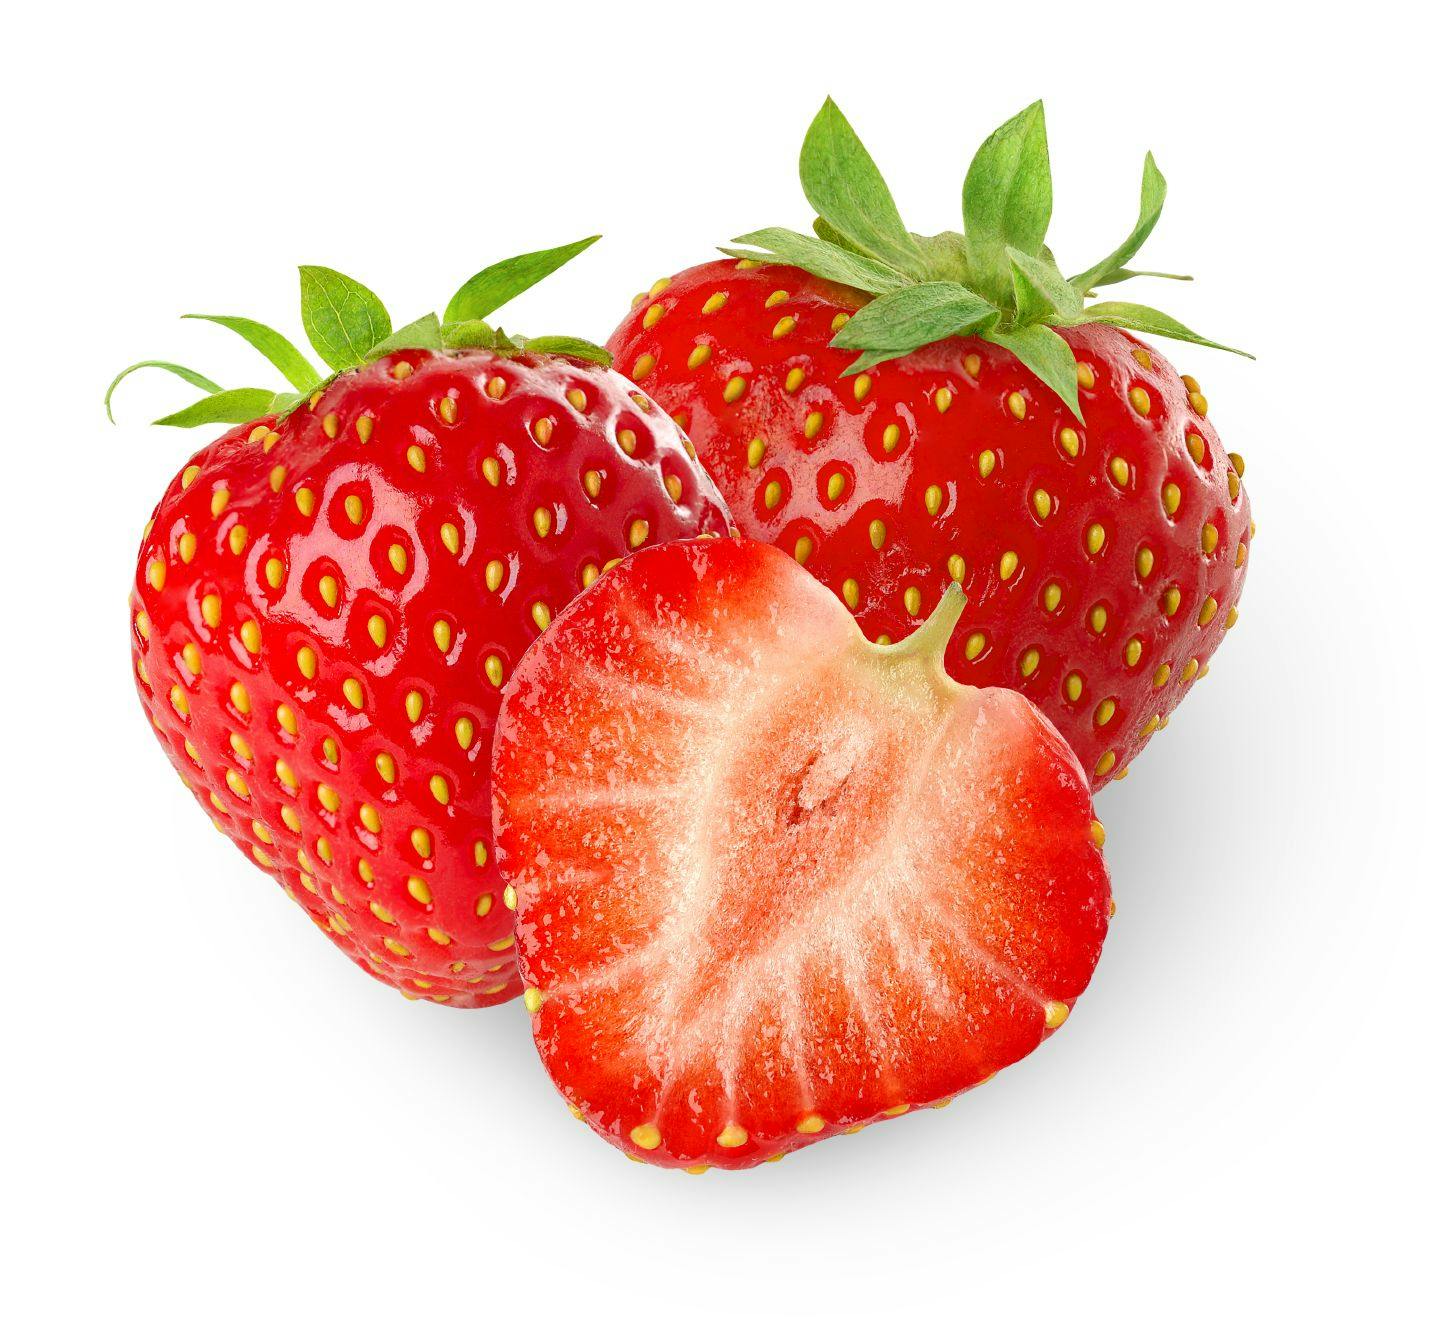 Fun Fact: Strawberry